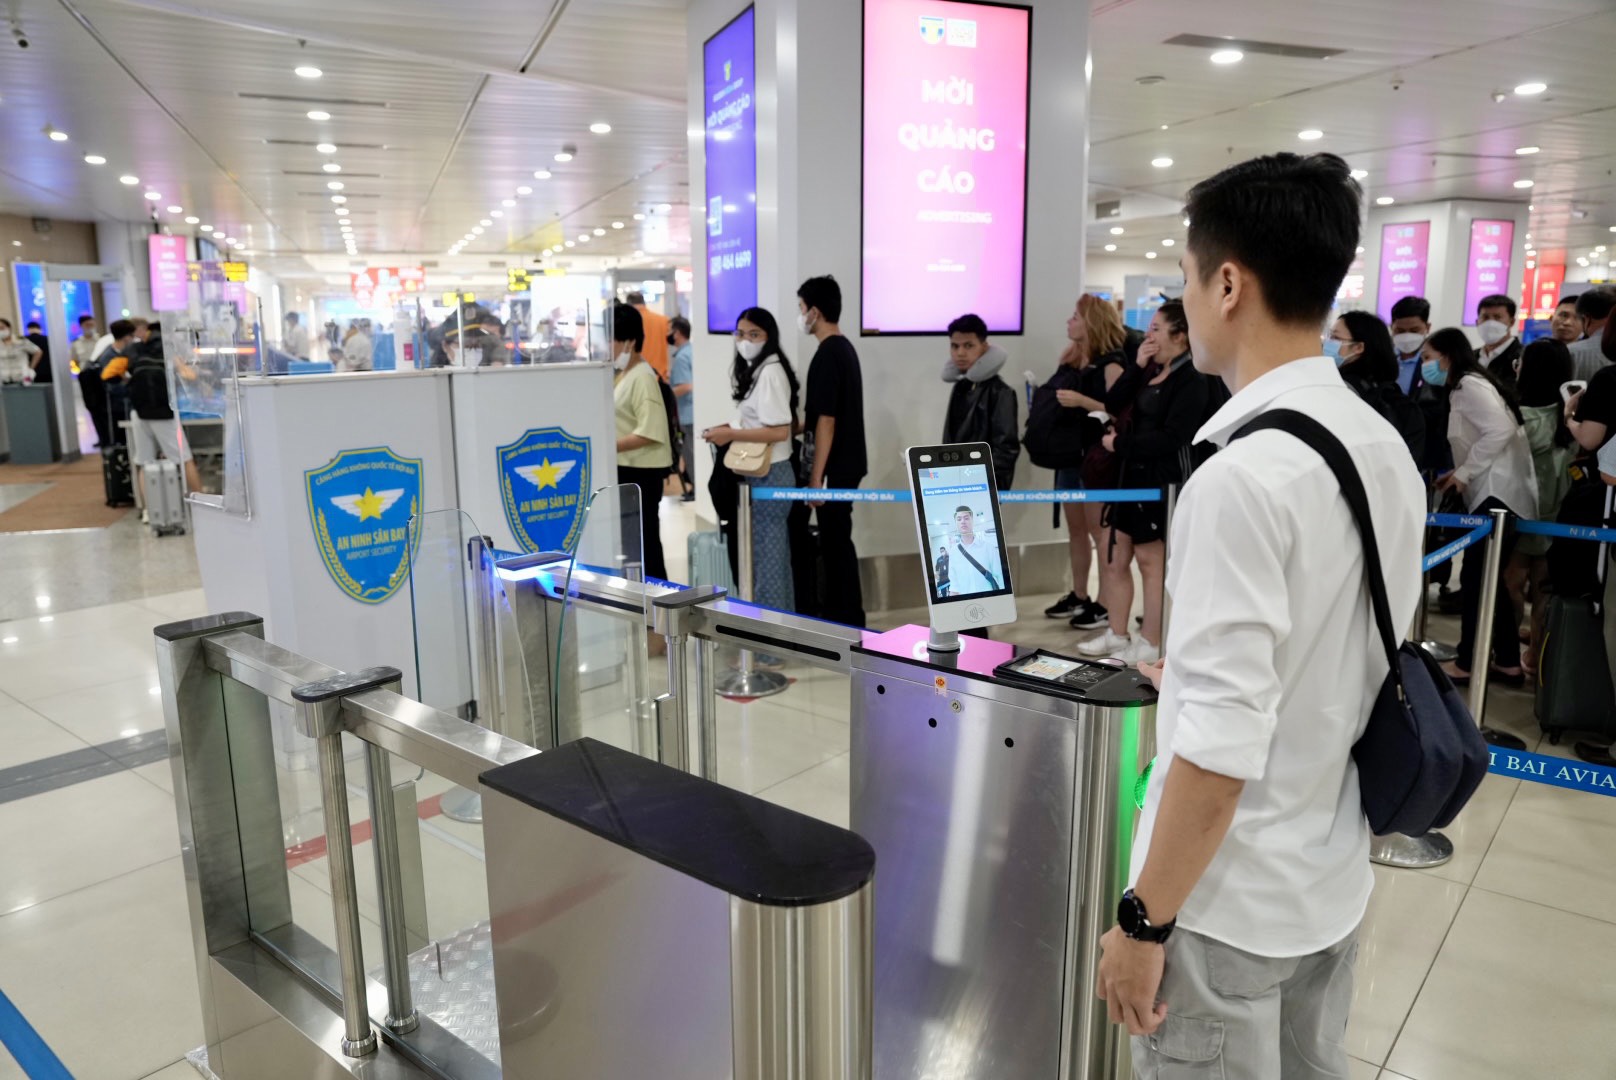 Sân bay Nội Bài và Tân Sơn Nhất dự kiến đón gần 1 triệu lượt người dịp nghỉ lễ 30/4, hành khách cần lưu ý những gì khi đi máy bay? - Ảnh 2.